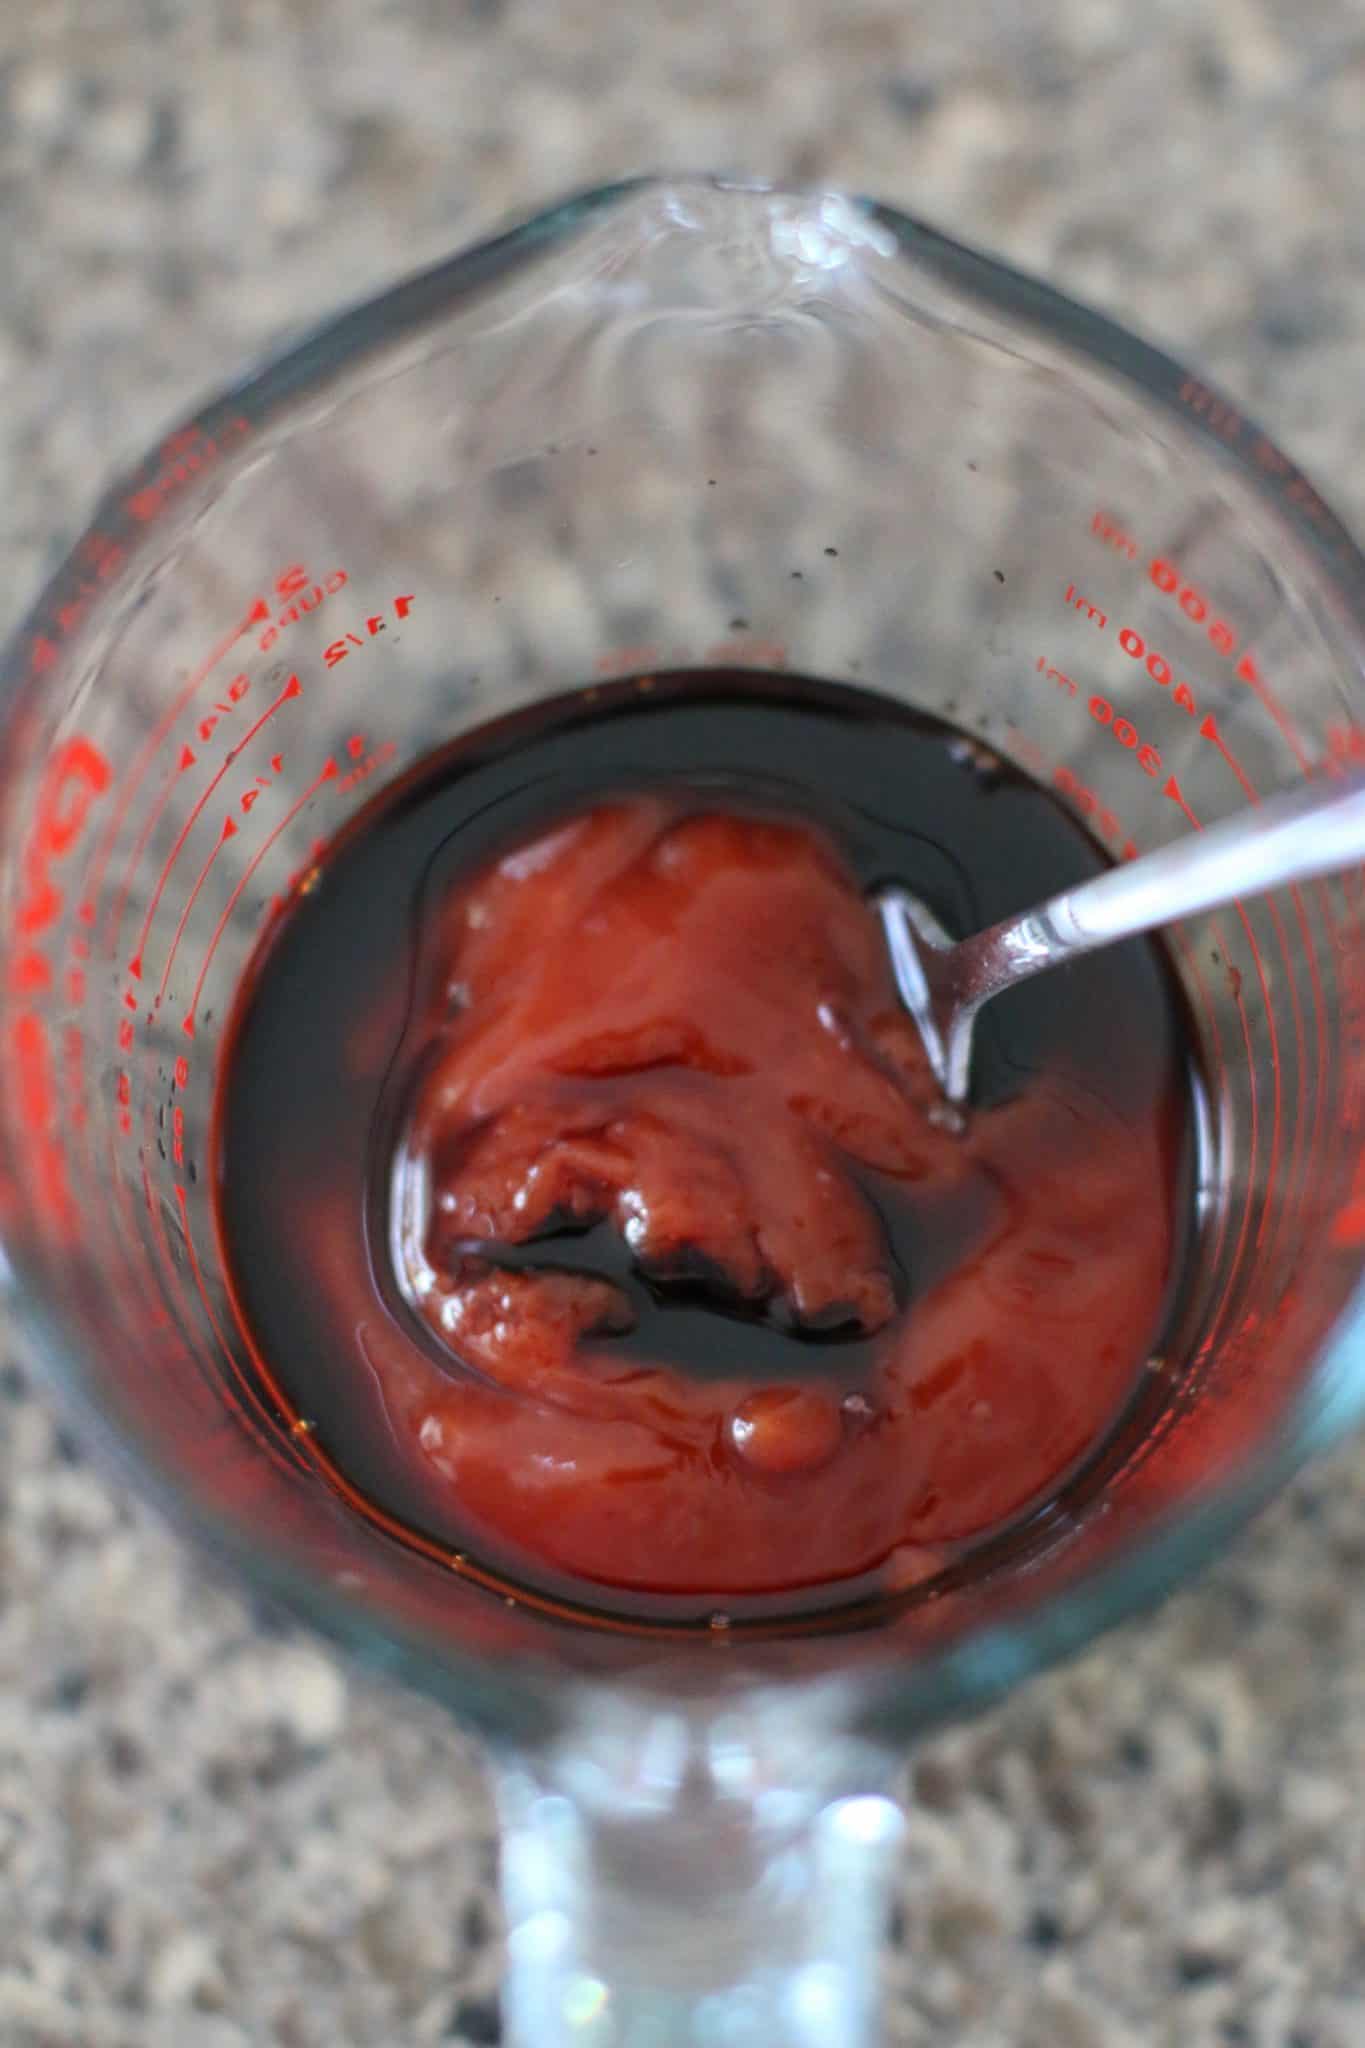 ketchup and balsamic vinegar for meatloaf glaze.